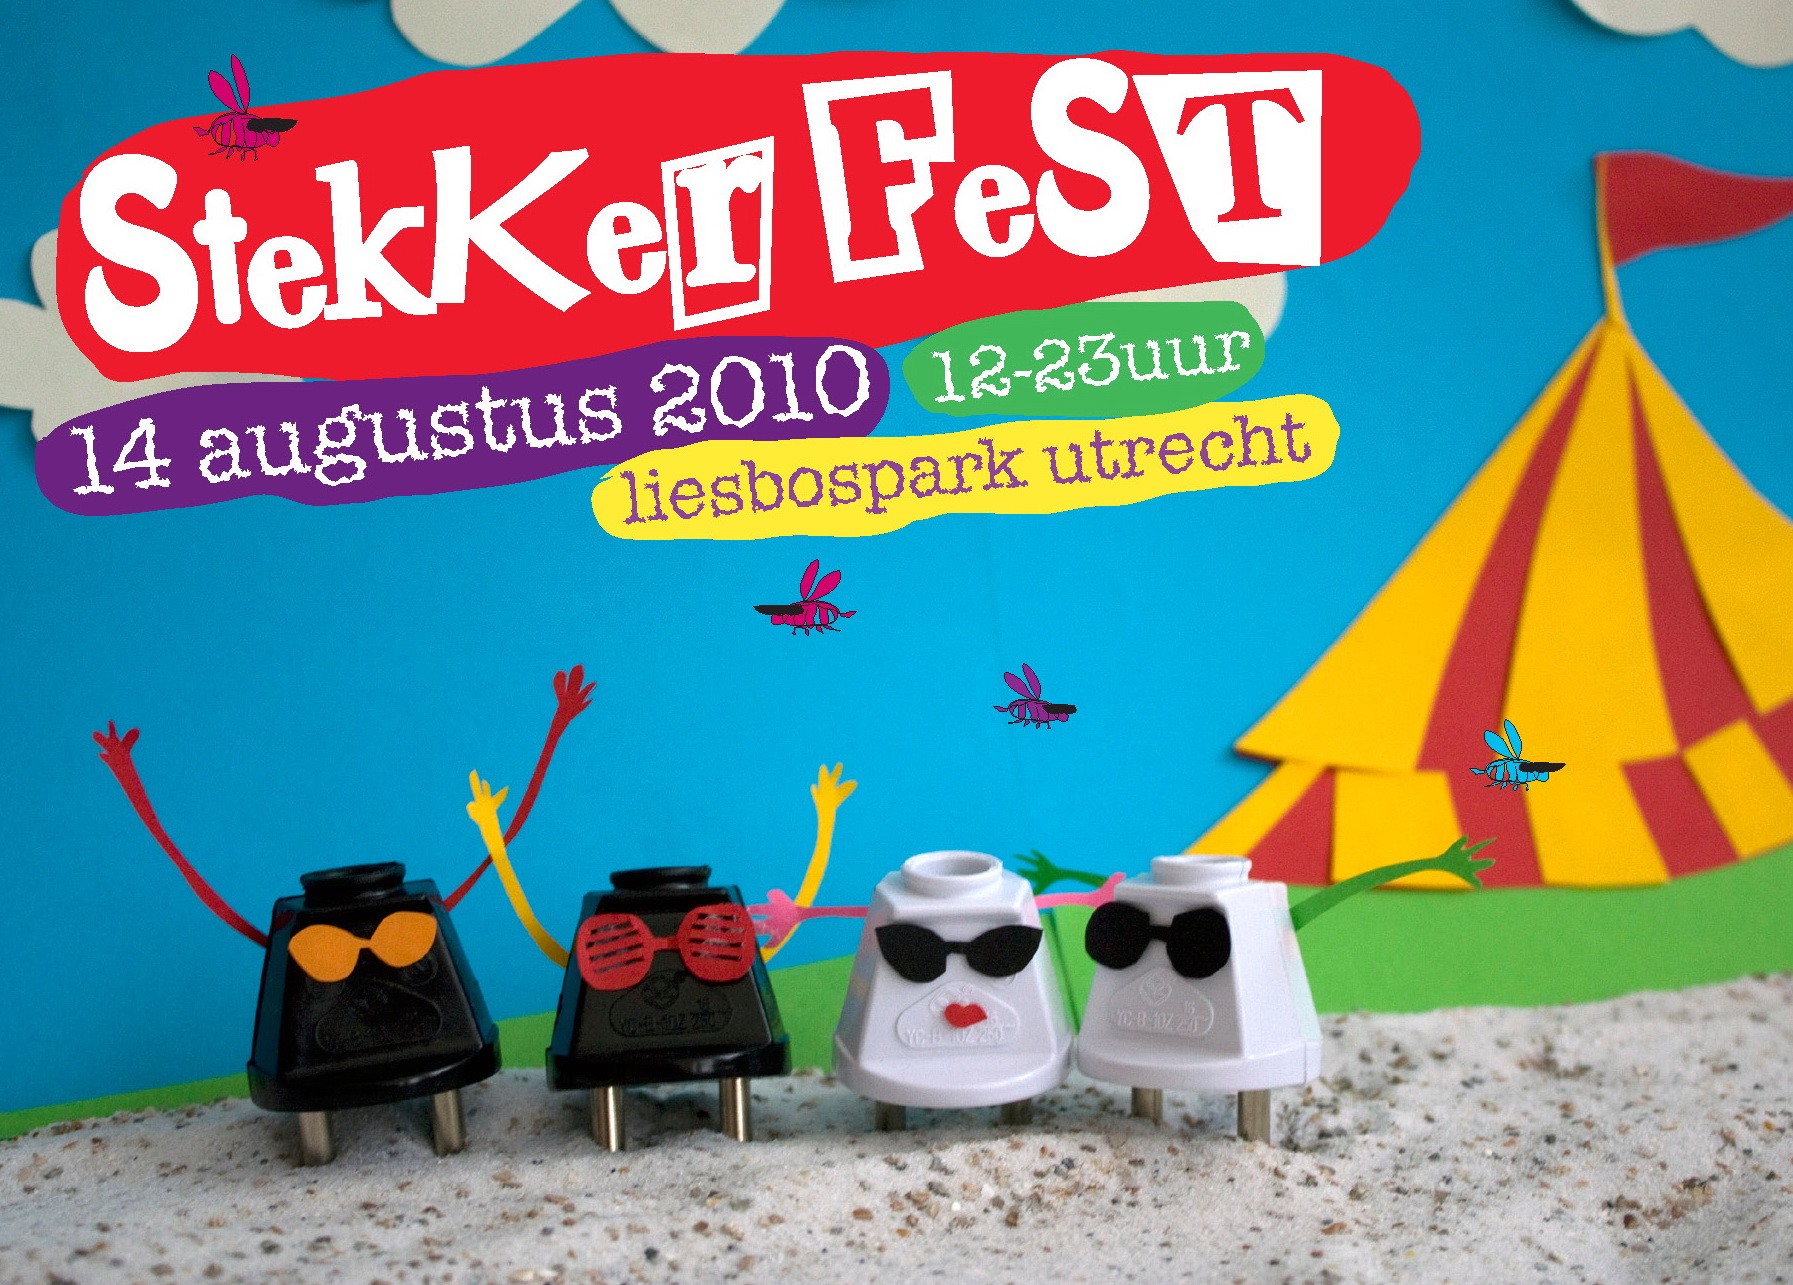 Stekker Fest